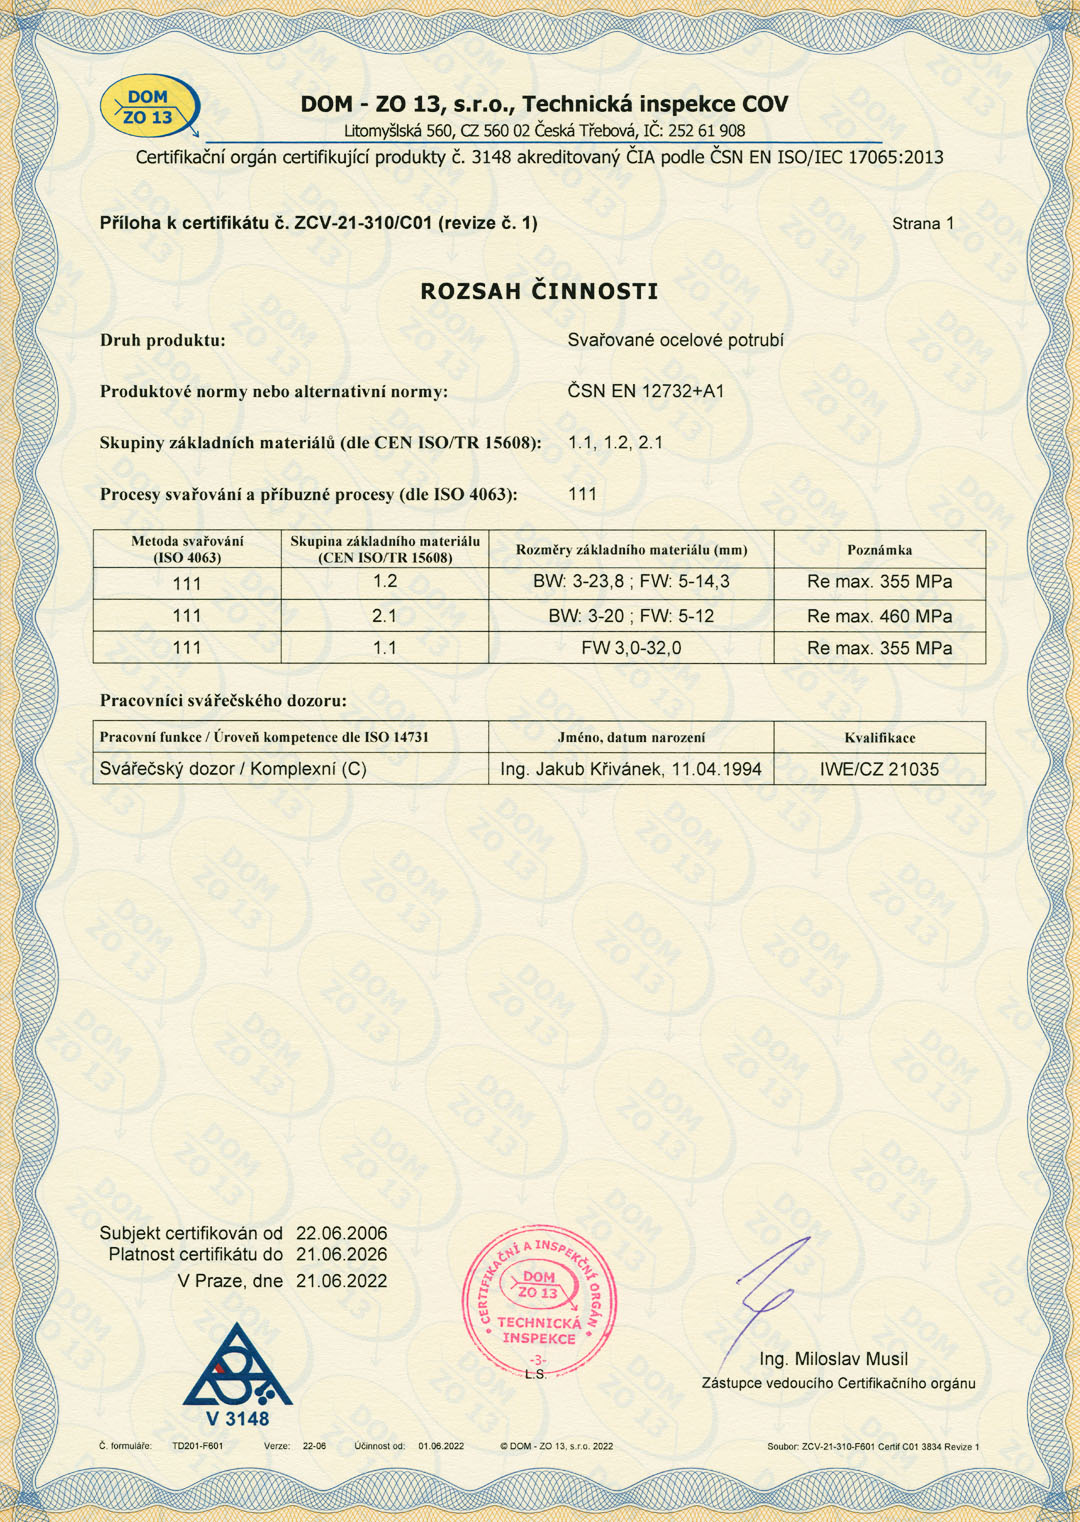 Příloha k certifikátu procesu svařování podle ČSN EN ISO 3834-2:2022 (ZCV-21-310/C01)